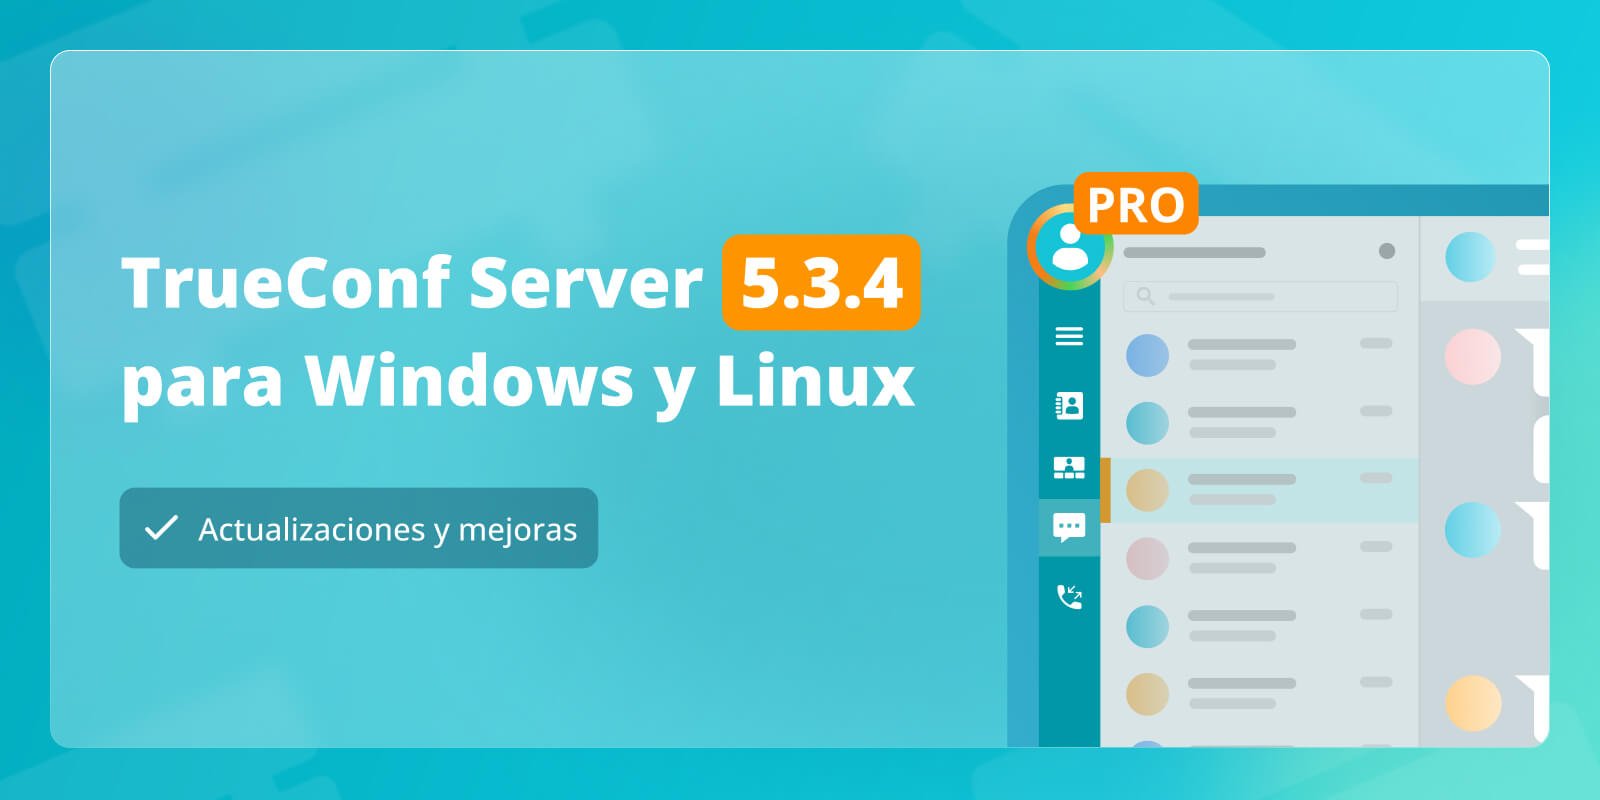 TrueConf Server 5.3.4: actualizaciones y mejoras 1